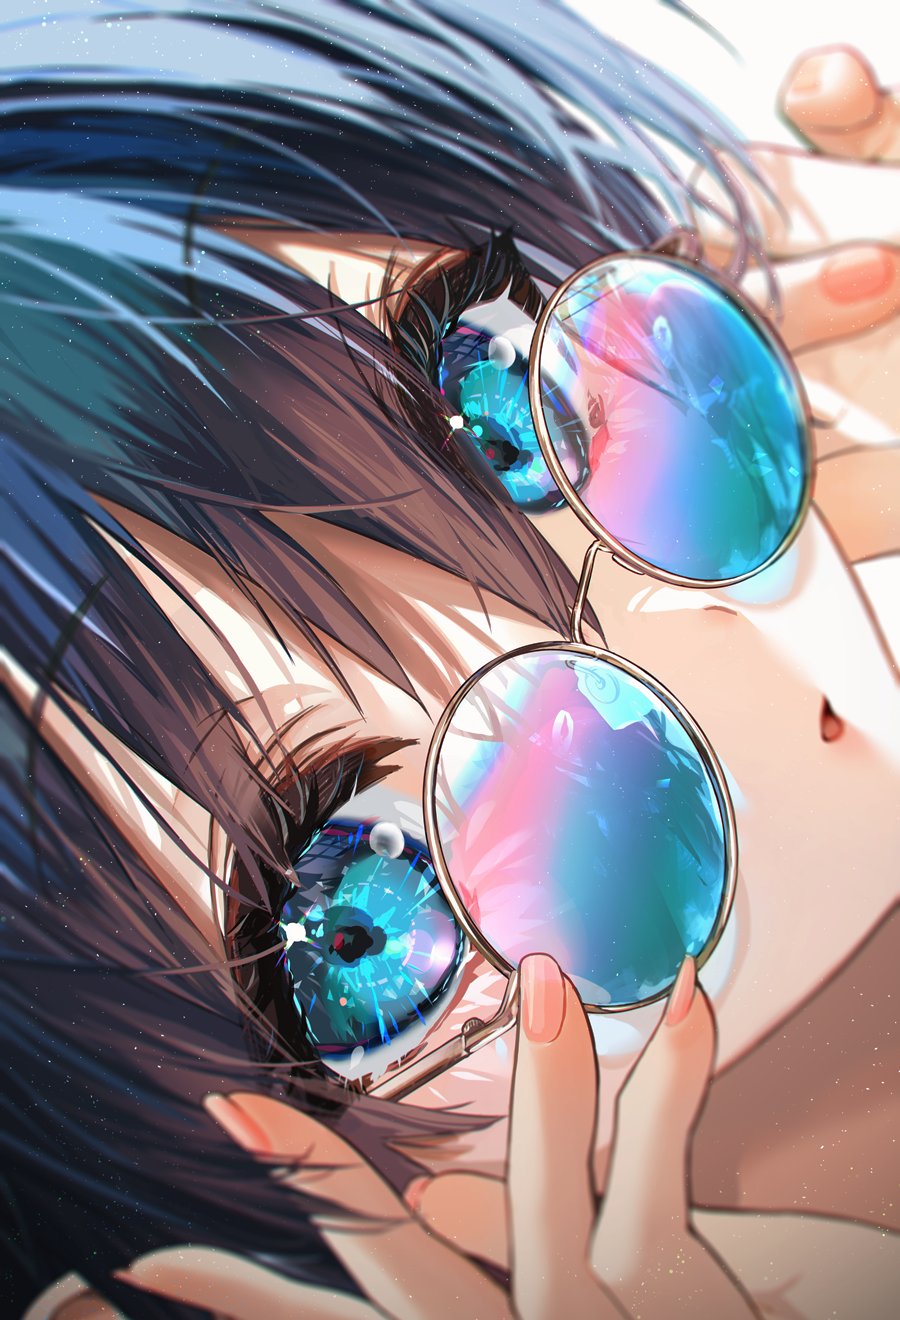 Digital Art Artwork Illustration Anime Anime Girls Women Dark Hair Glasses Closeup Face Women With G 900x1320